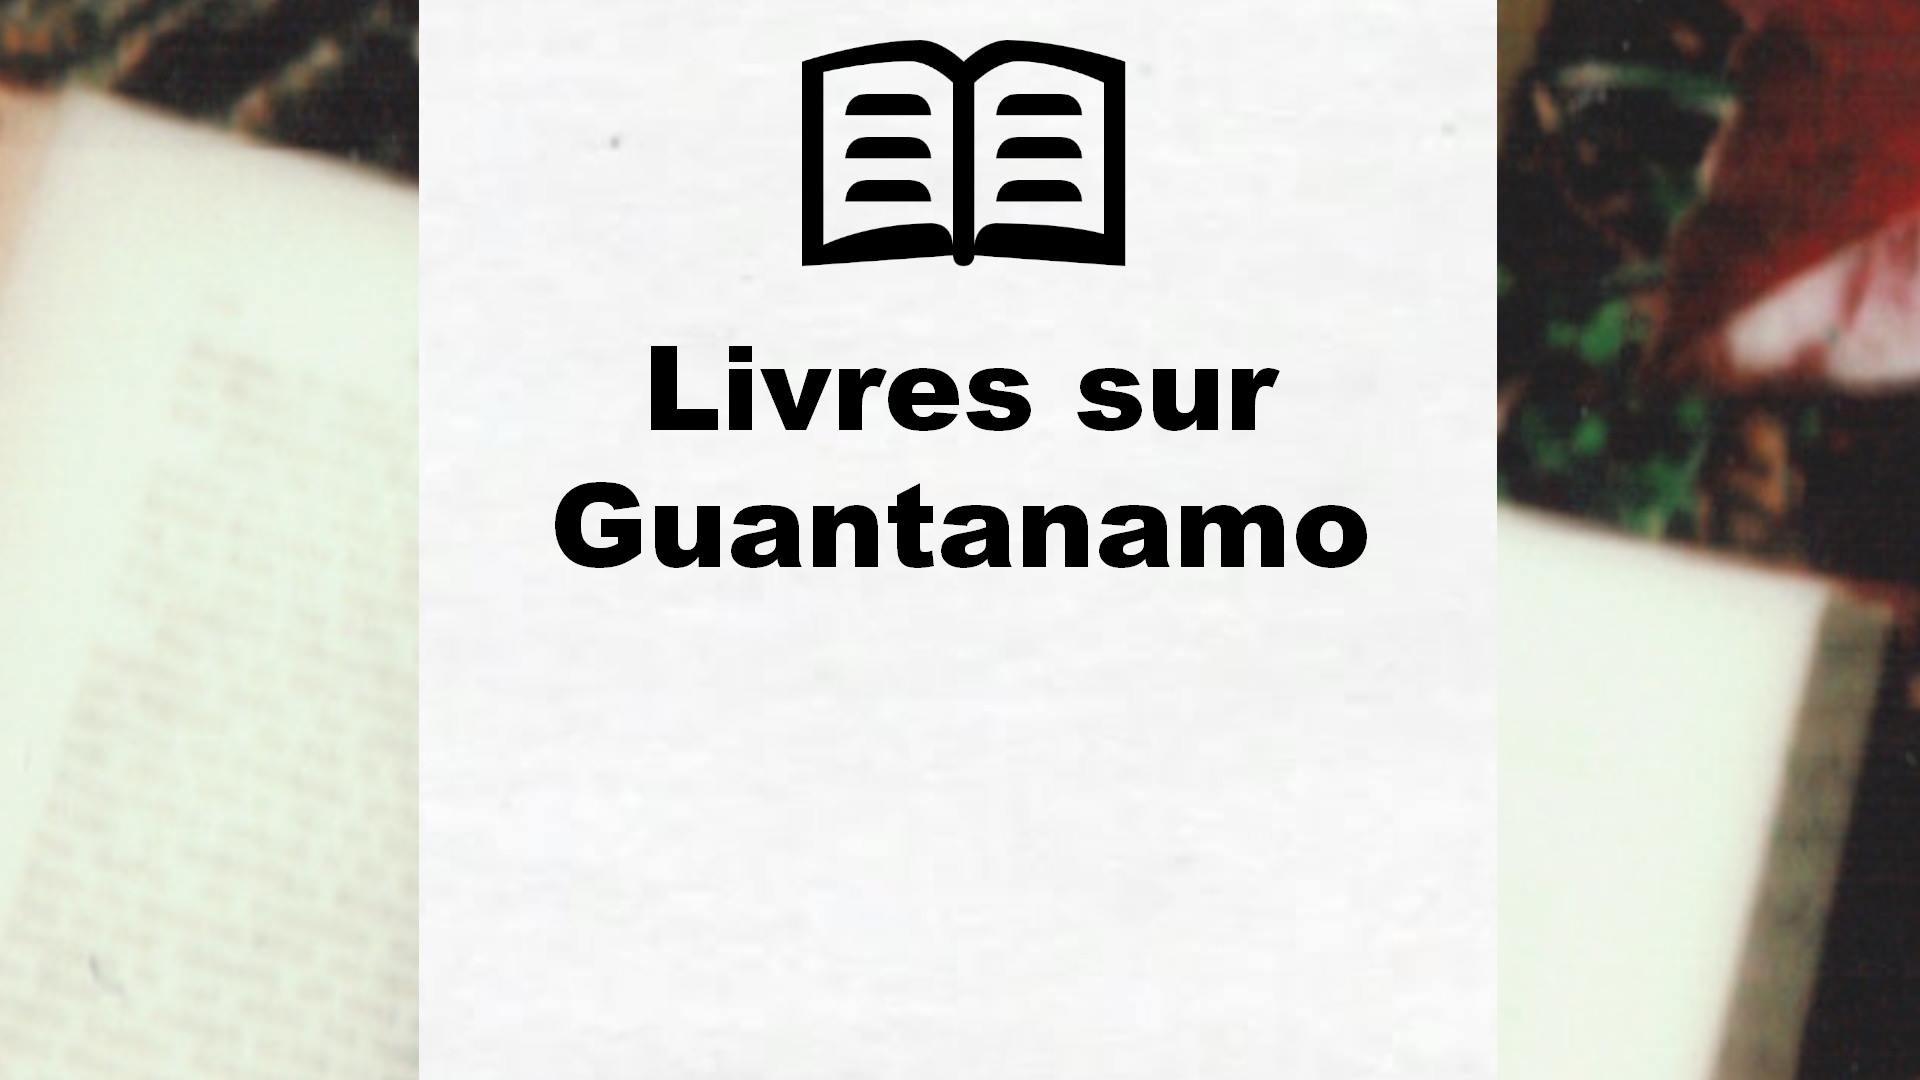 Livres sur Guantanamo